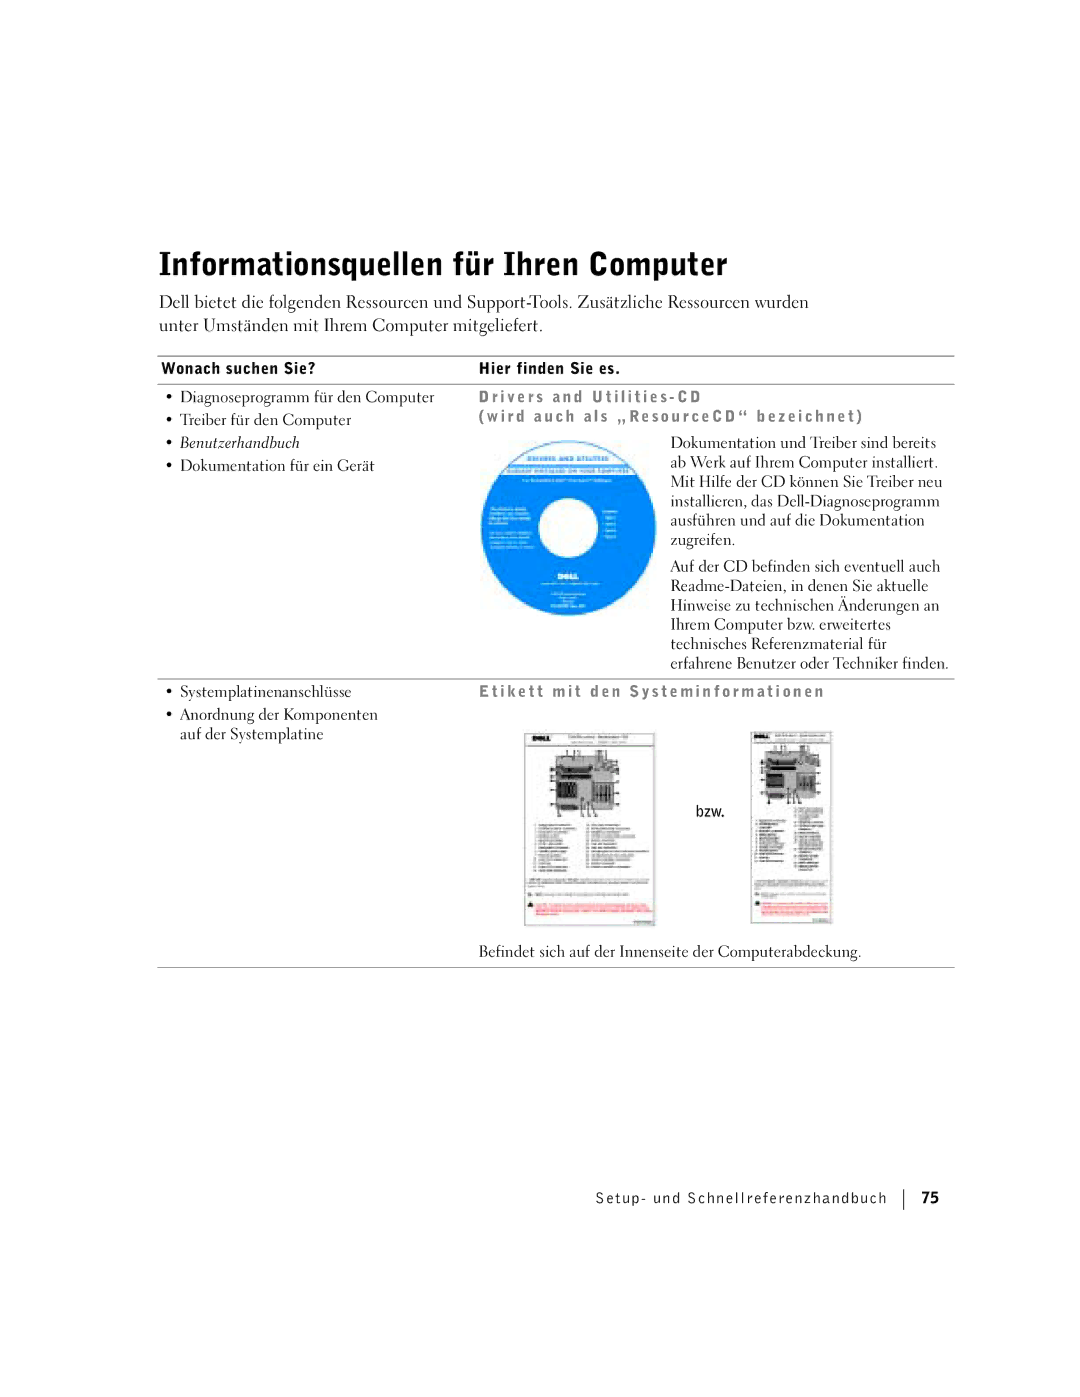 Dell F0276 manual Informationsquellen für Ihren Computer, R d a u c h S „ Re s o u r c e C D b e z e i c h n e t 